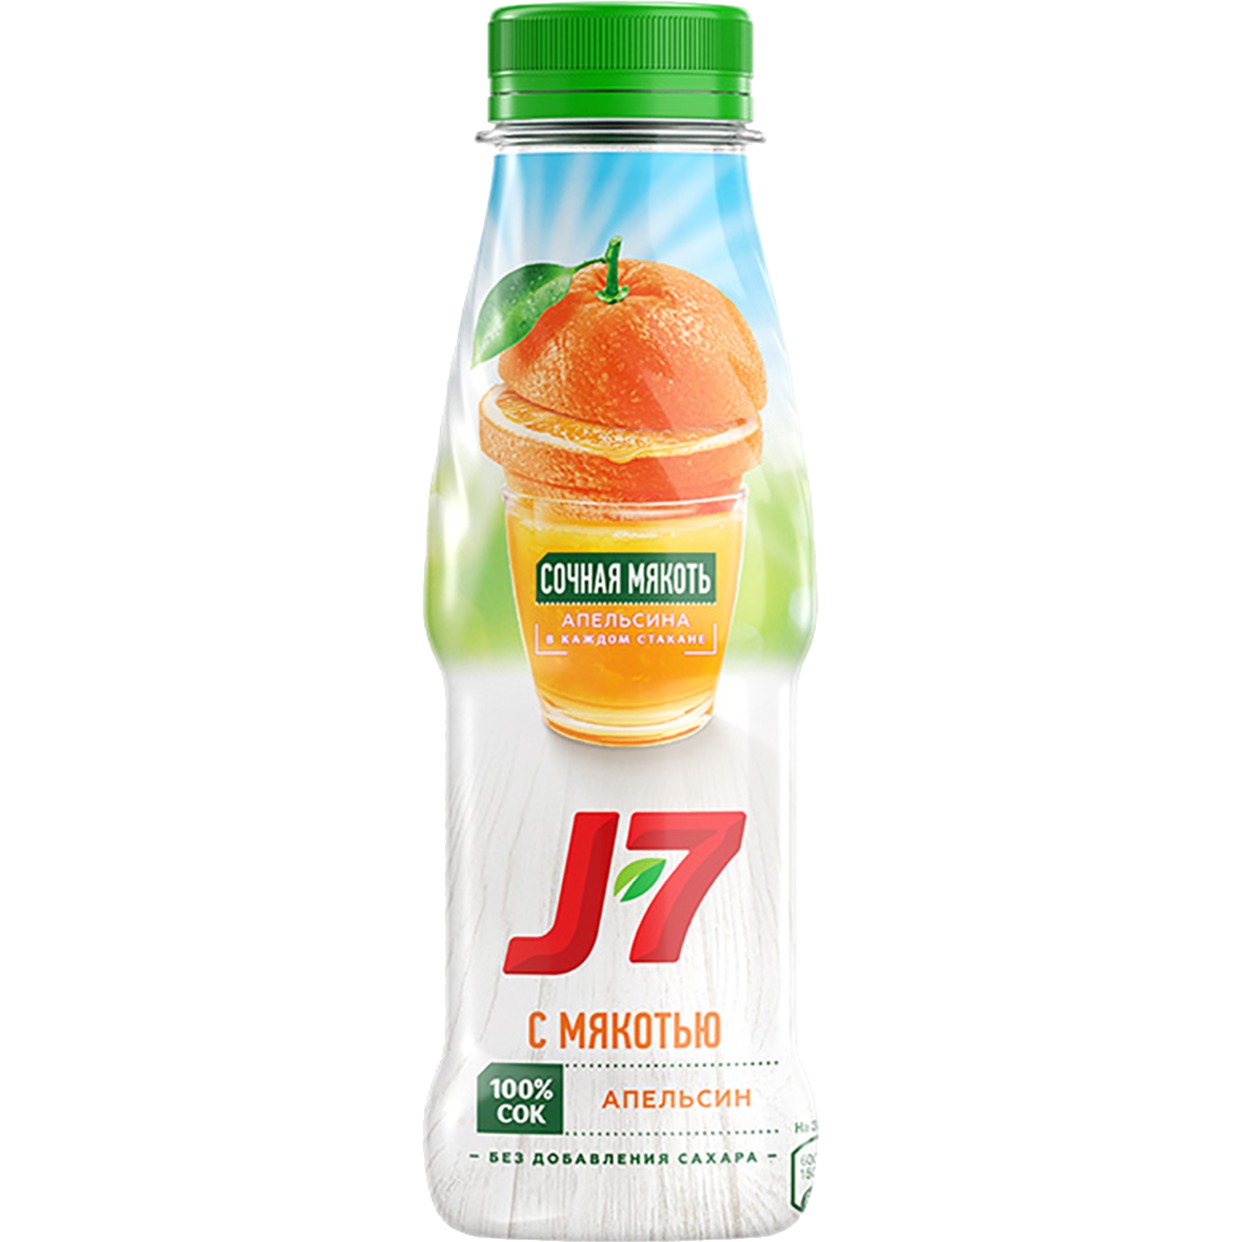 Сок апельсиновый с мякотью для детского питания "J7" 0,3 л по акции в Пятерочке